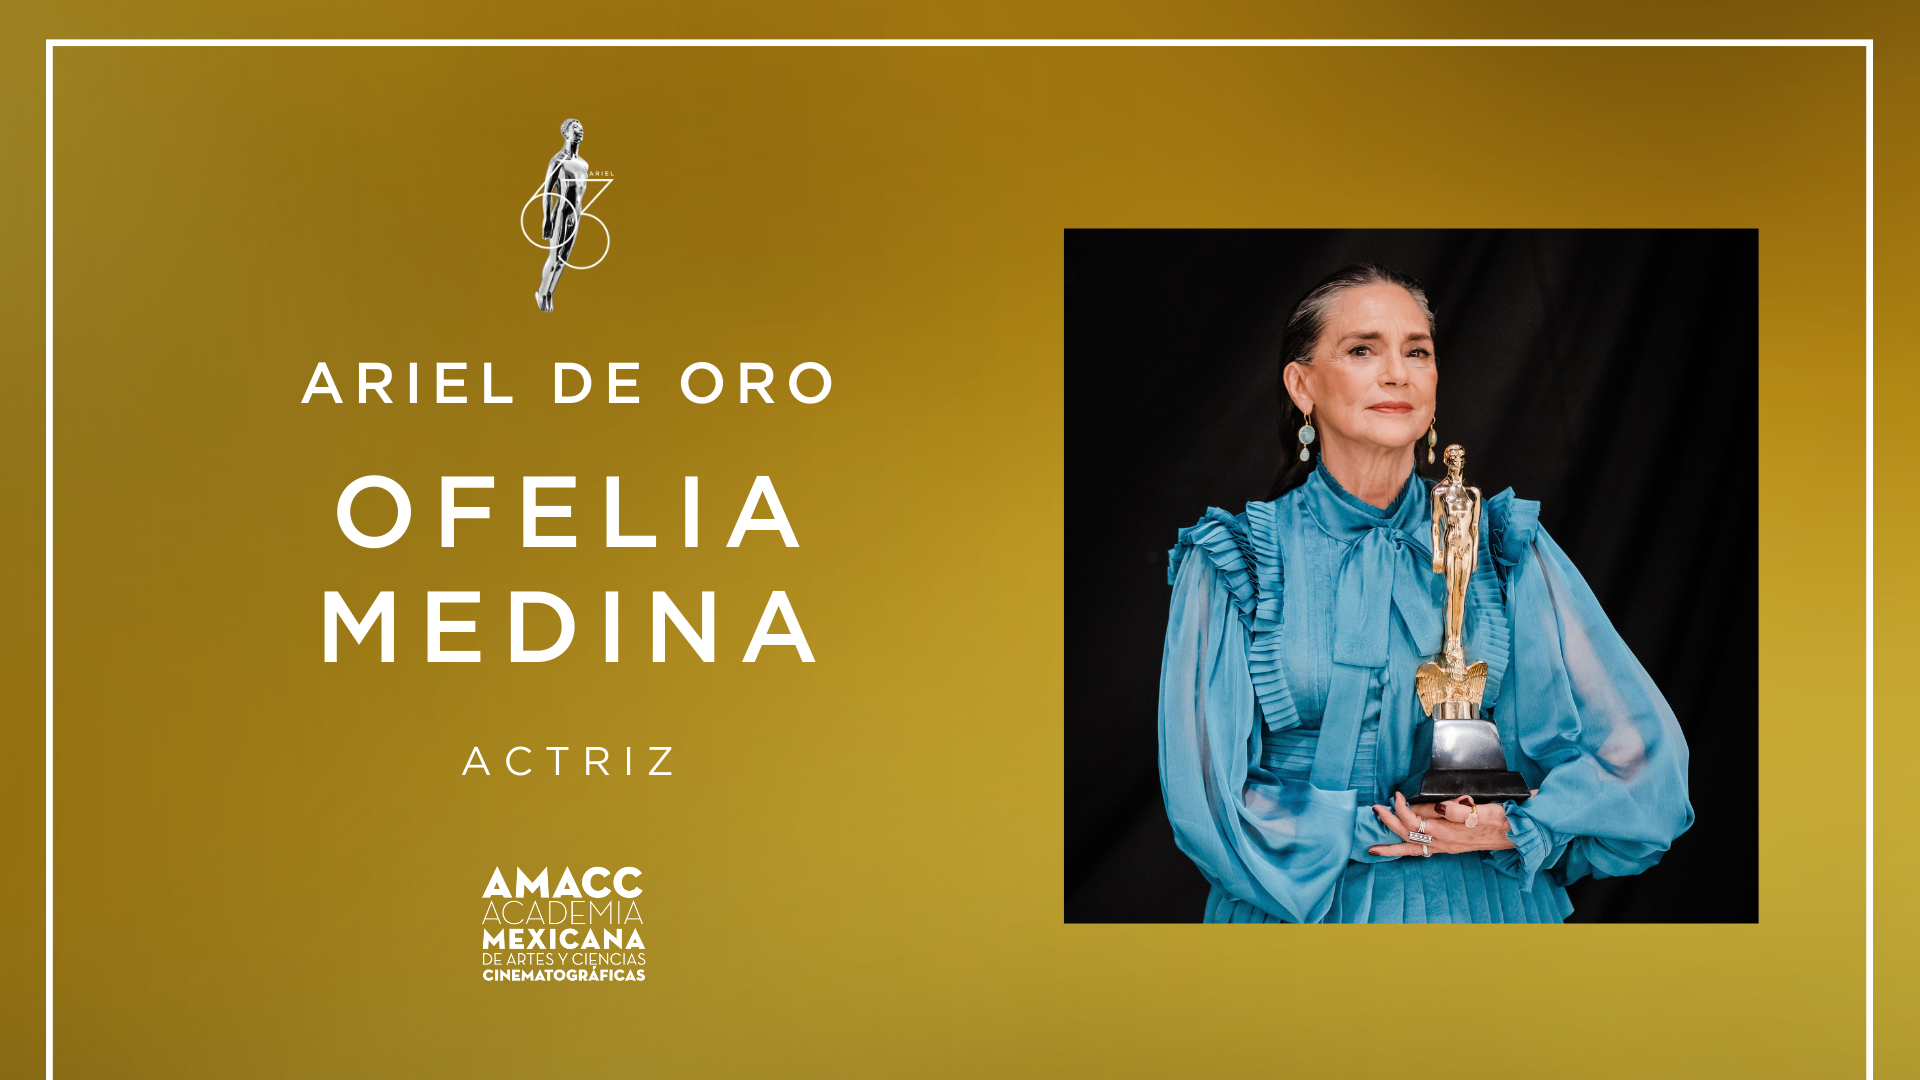 Ariel de Oro Ofelia Medina